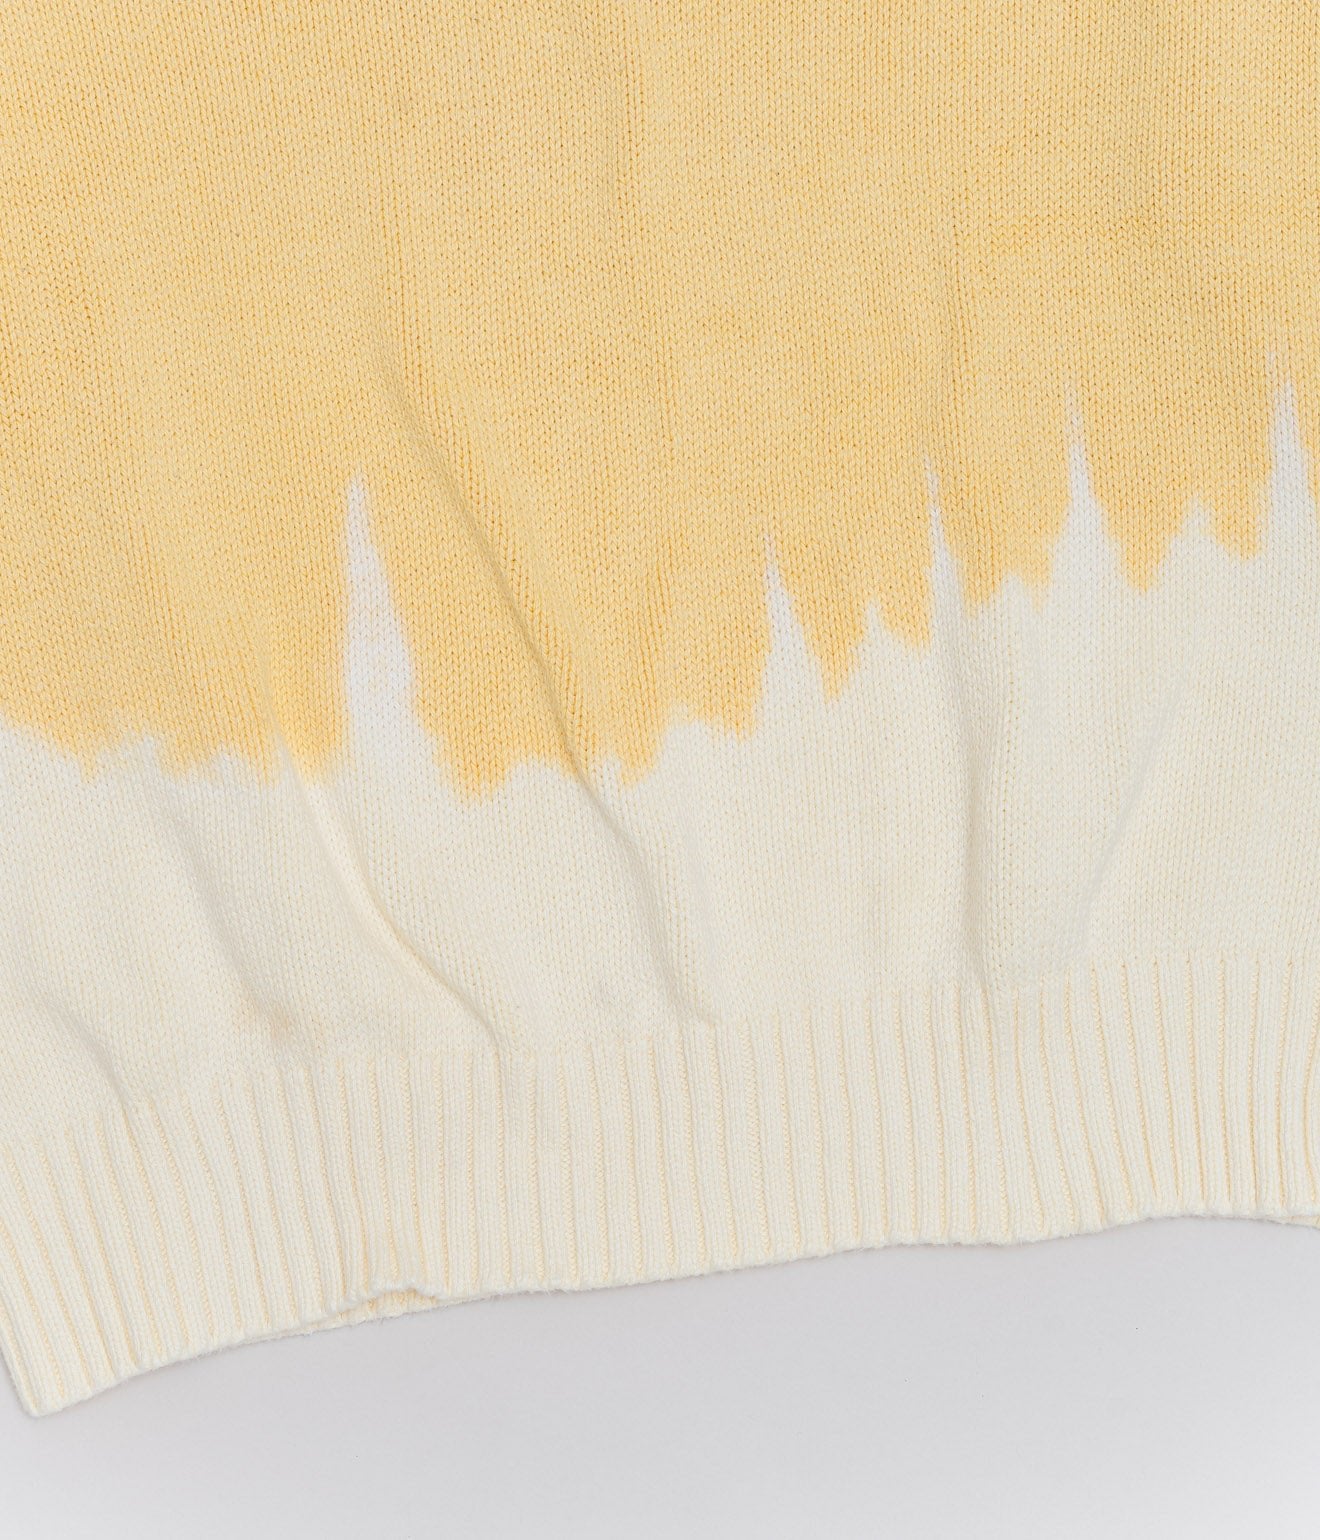 r "Tie-dye cotton sweater fire pattern" Yellow 1 - WEAREALLANIMALS